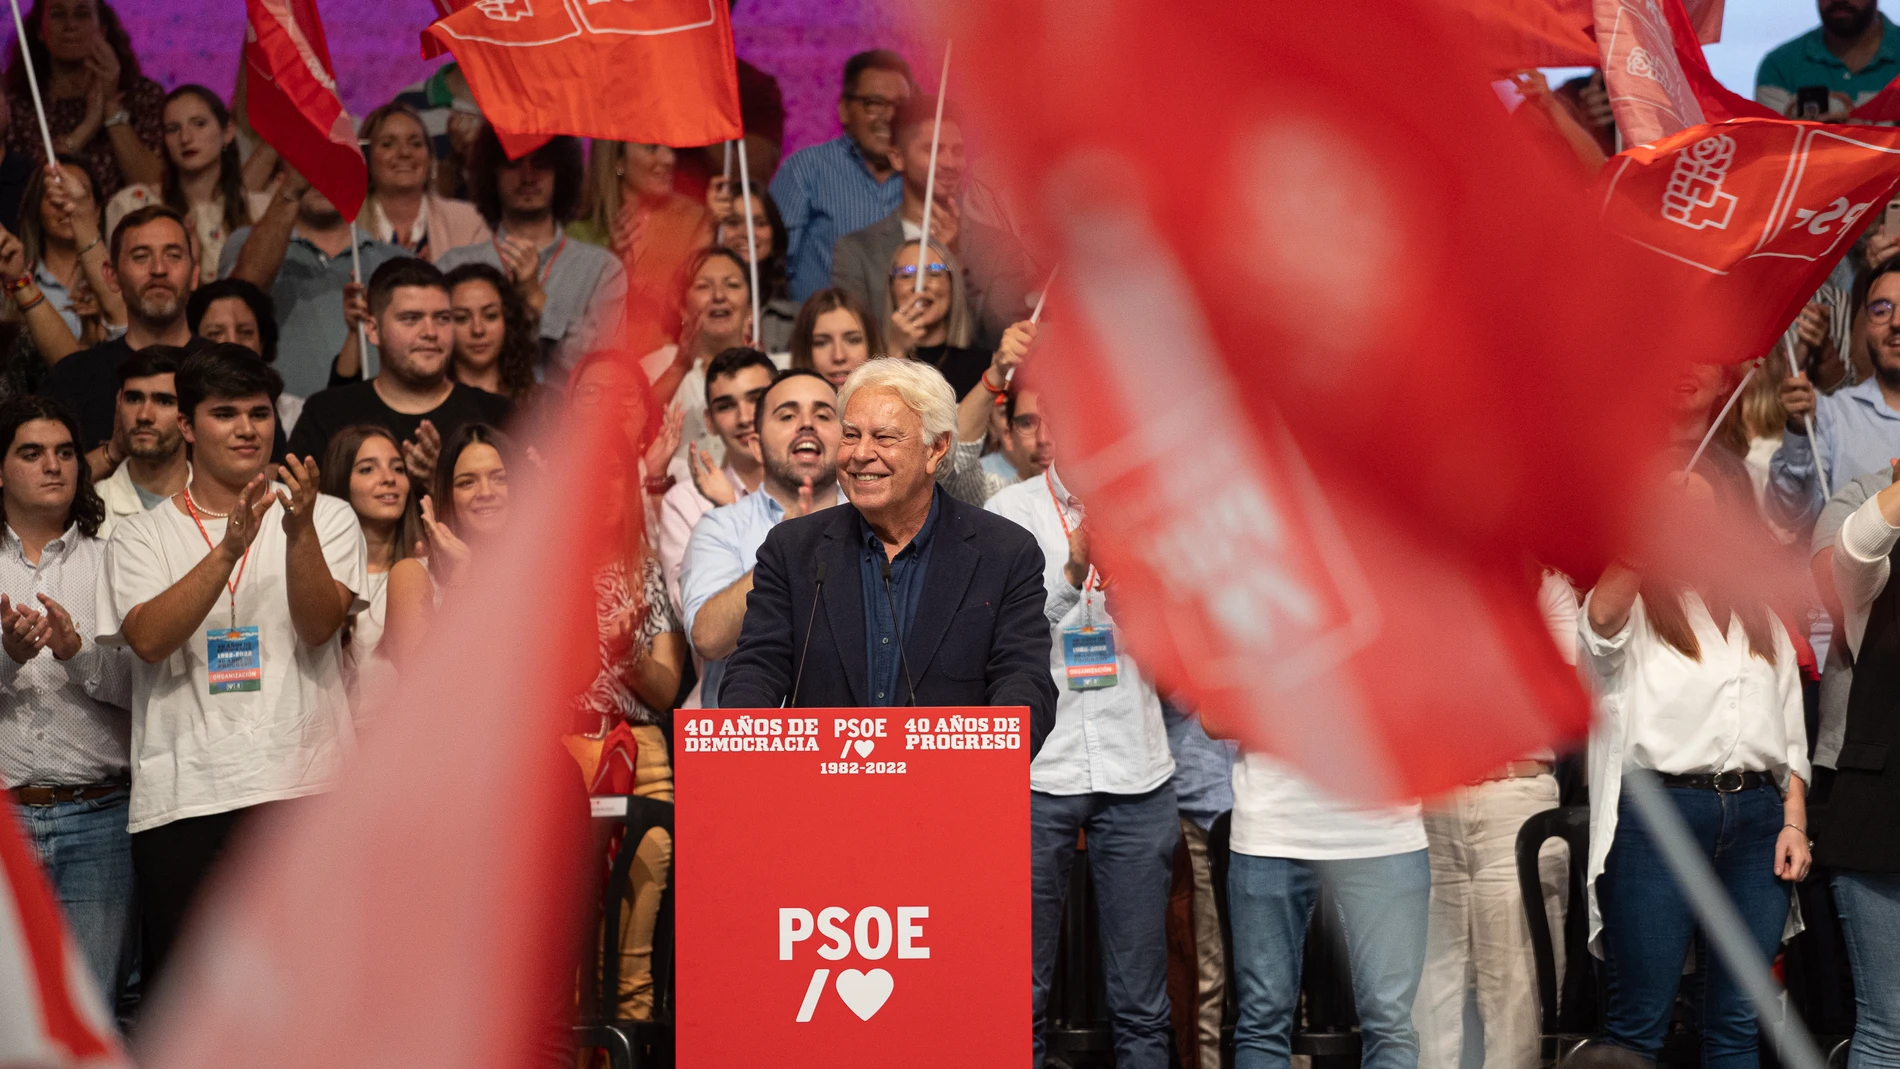 El expresidente del Gobierno Felipe González dirigiéndose al público en el acto organizado por el PSOE para conmemorar el 40 aniversario de la primera victoria electoral socialista en 1982 en FIBES, ayer, en Sevilla.